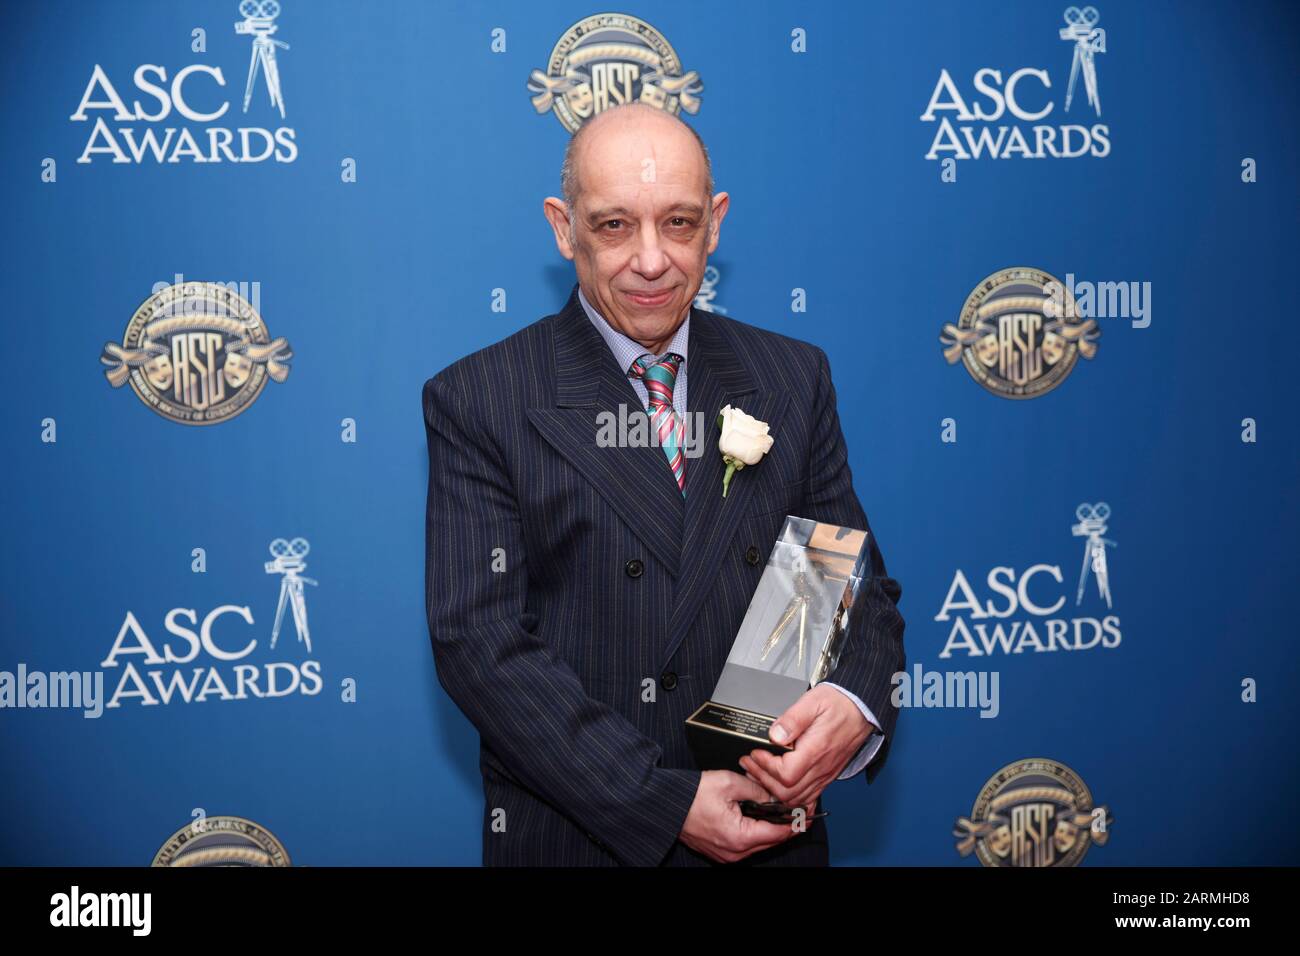 Bruno Delbonnel partecipa alla 34th Annual American Society of Cinematographers ASC Awards alla Ray Dolby Ballroom di Los Angeles, California, USA, il 25 gennaio 2020. Foto Stock